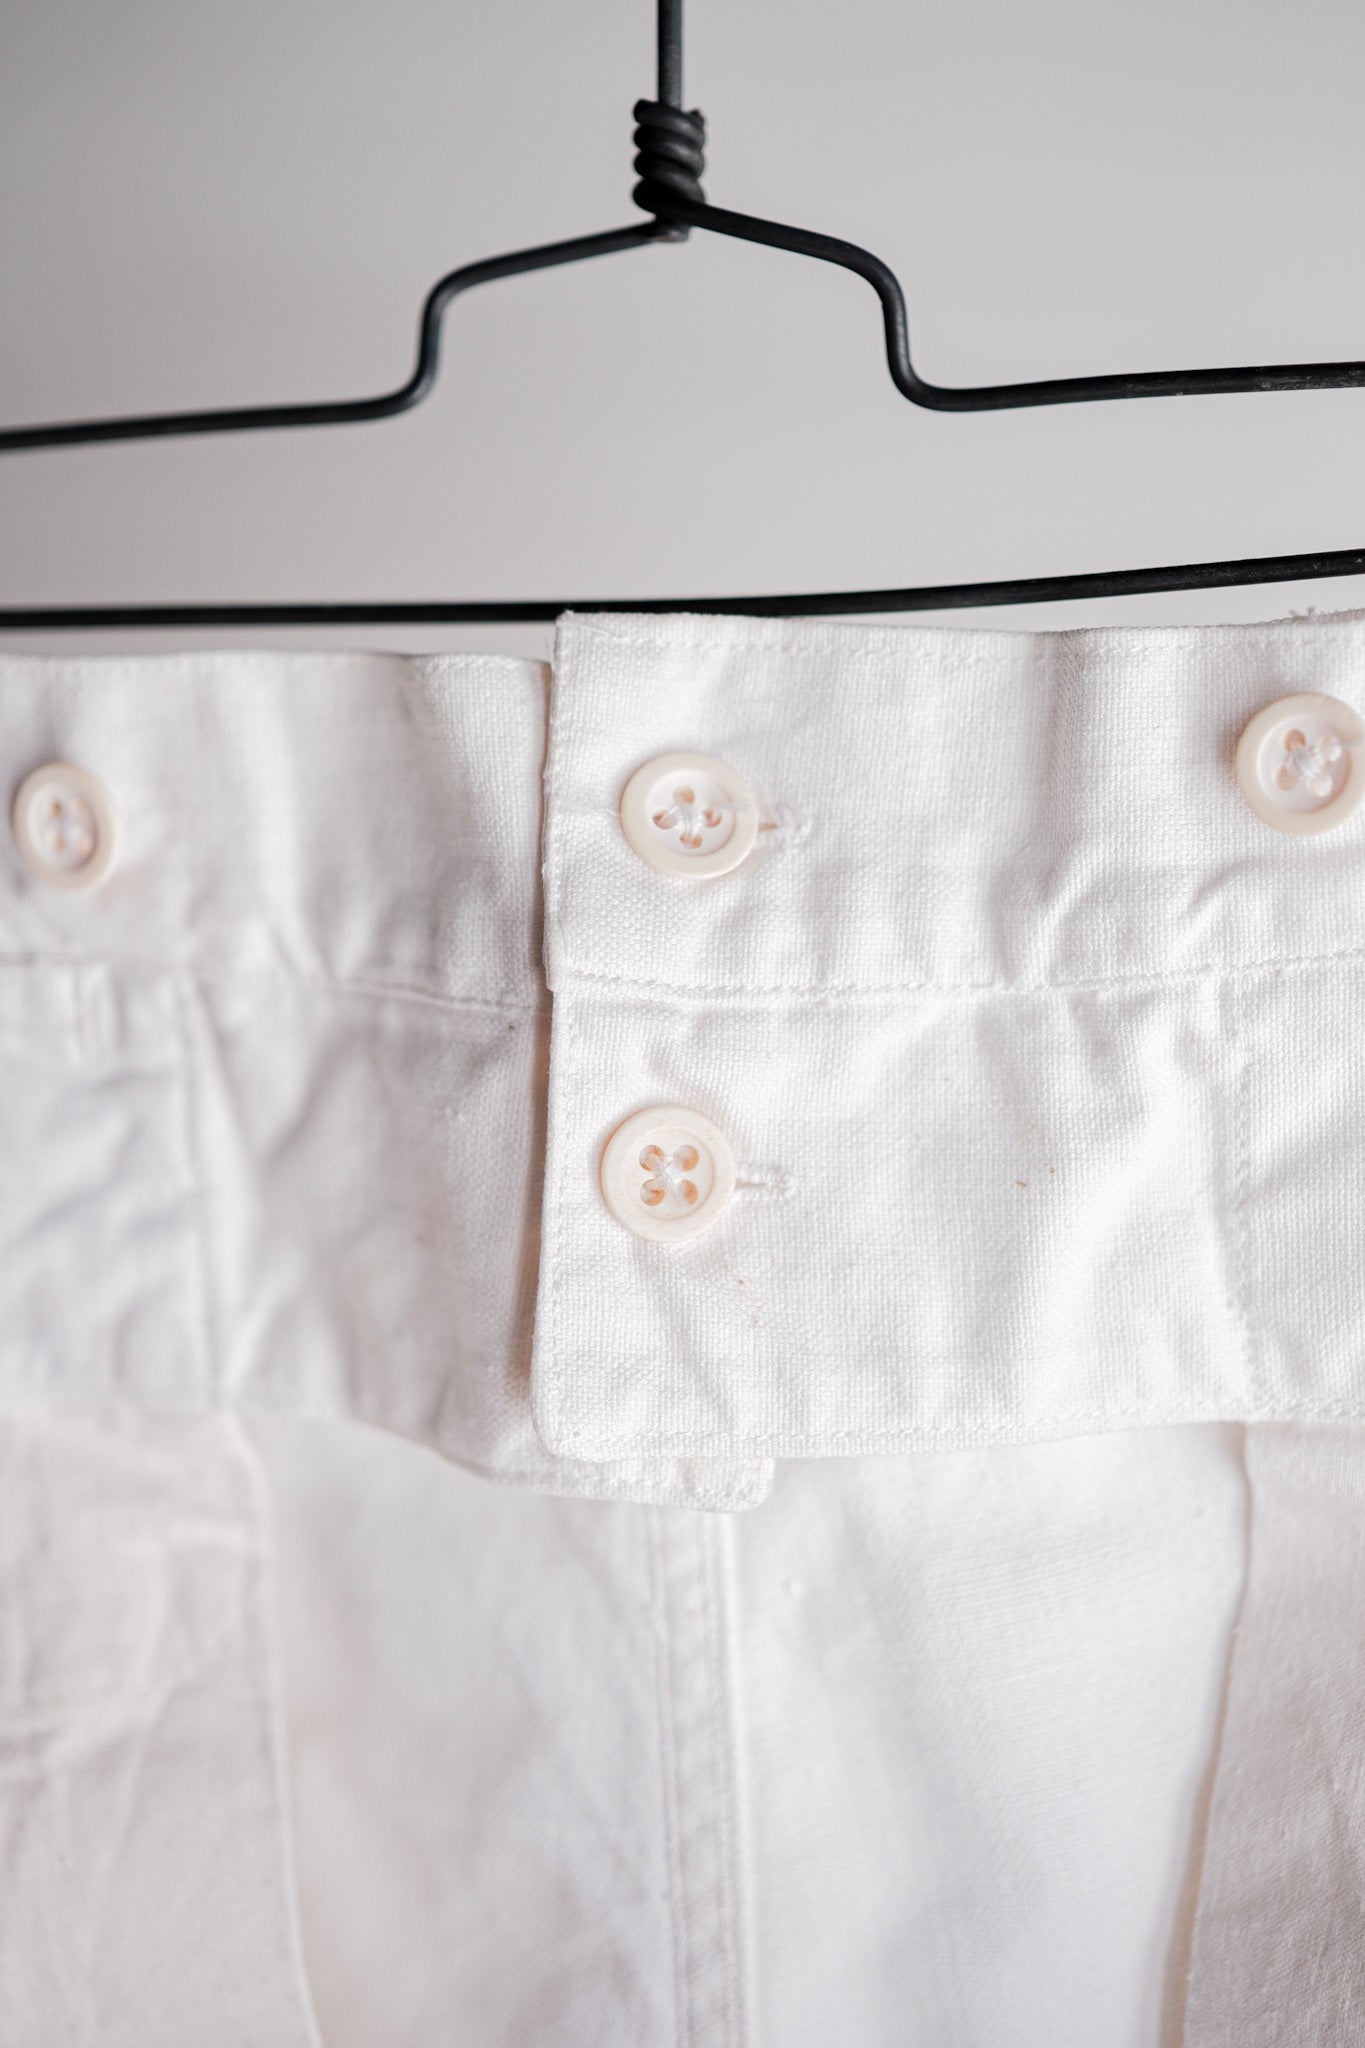 [〜50年代]法國海軍白色亞麻水手褲“死庫存”